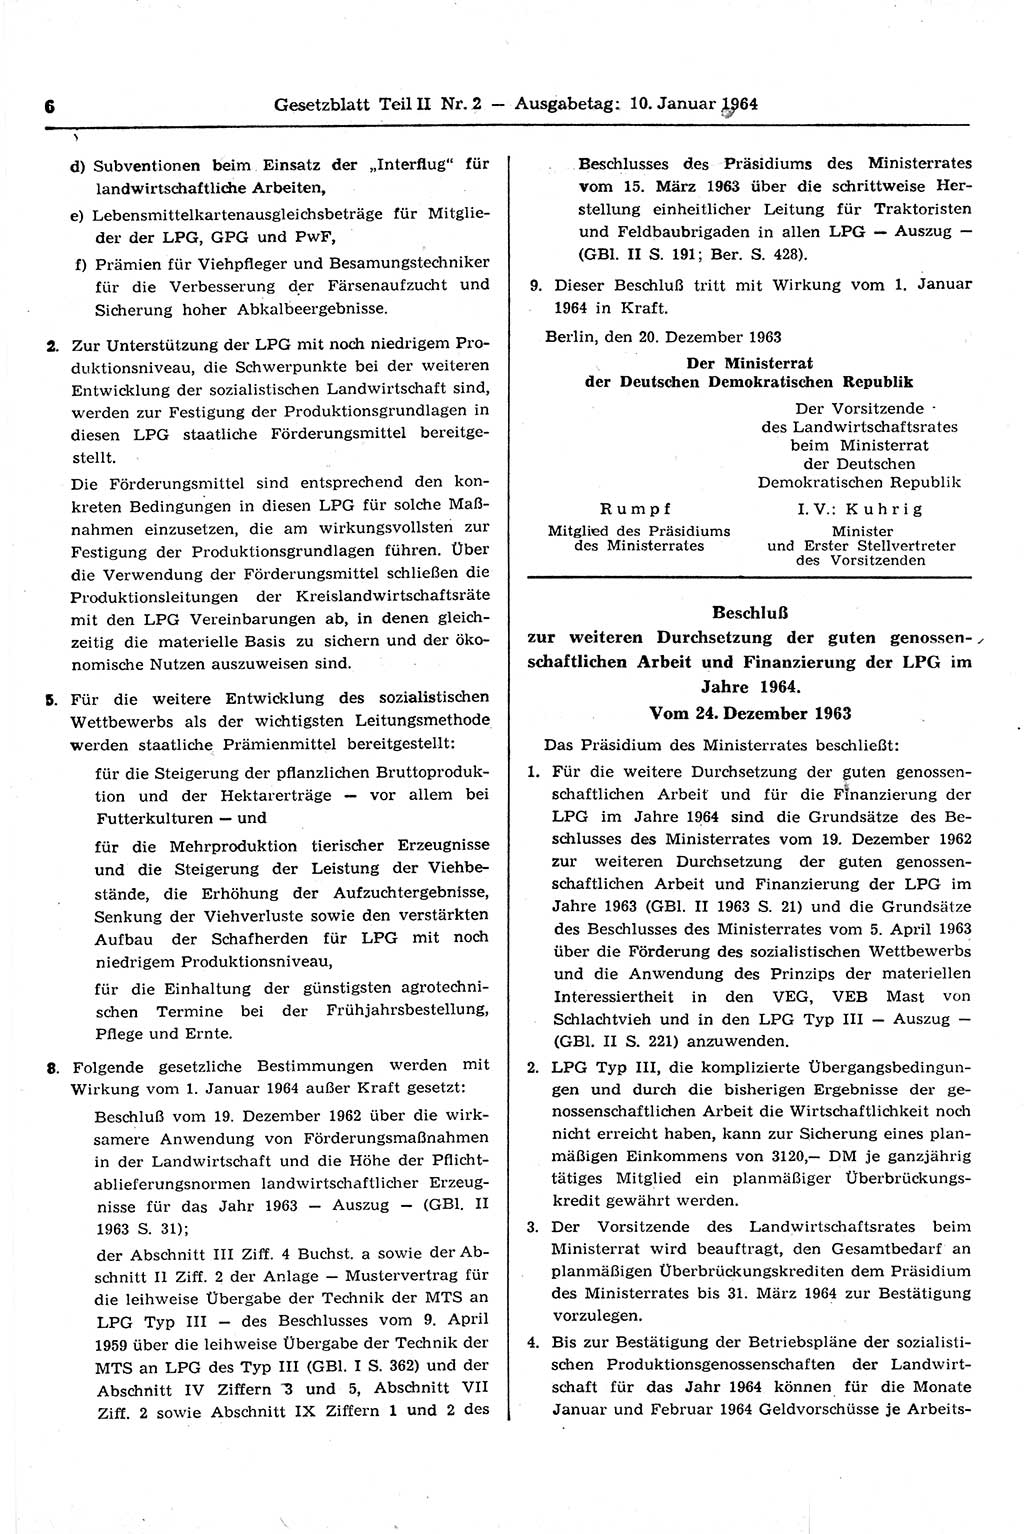 Gesetzblatt (GBl.) der Deutschen Demokratischen Republik (DDR) Teil ⅠⅠ 1964, Seite 6 (GBl. DDR ⅠⅠ 1964, S. 6)